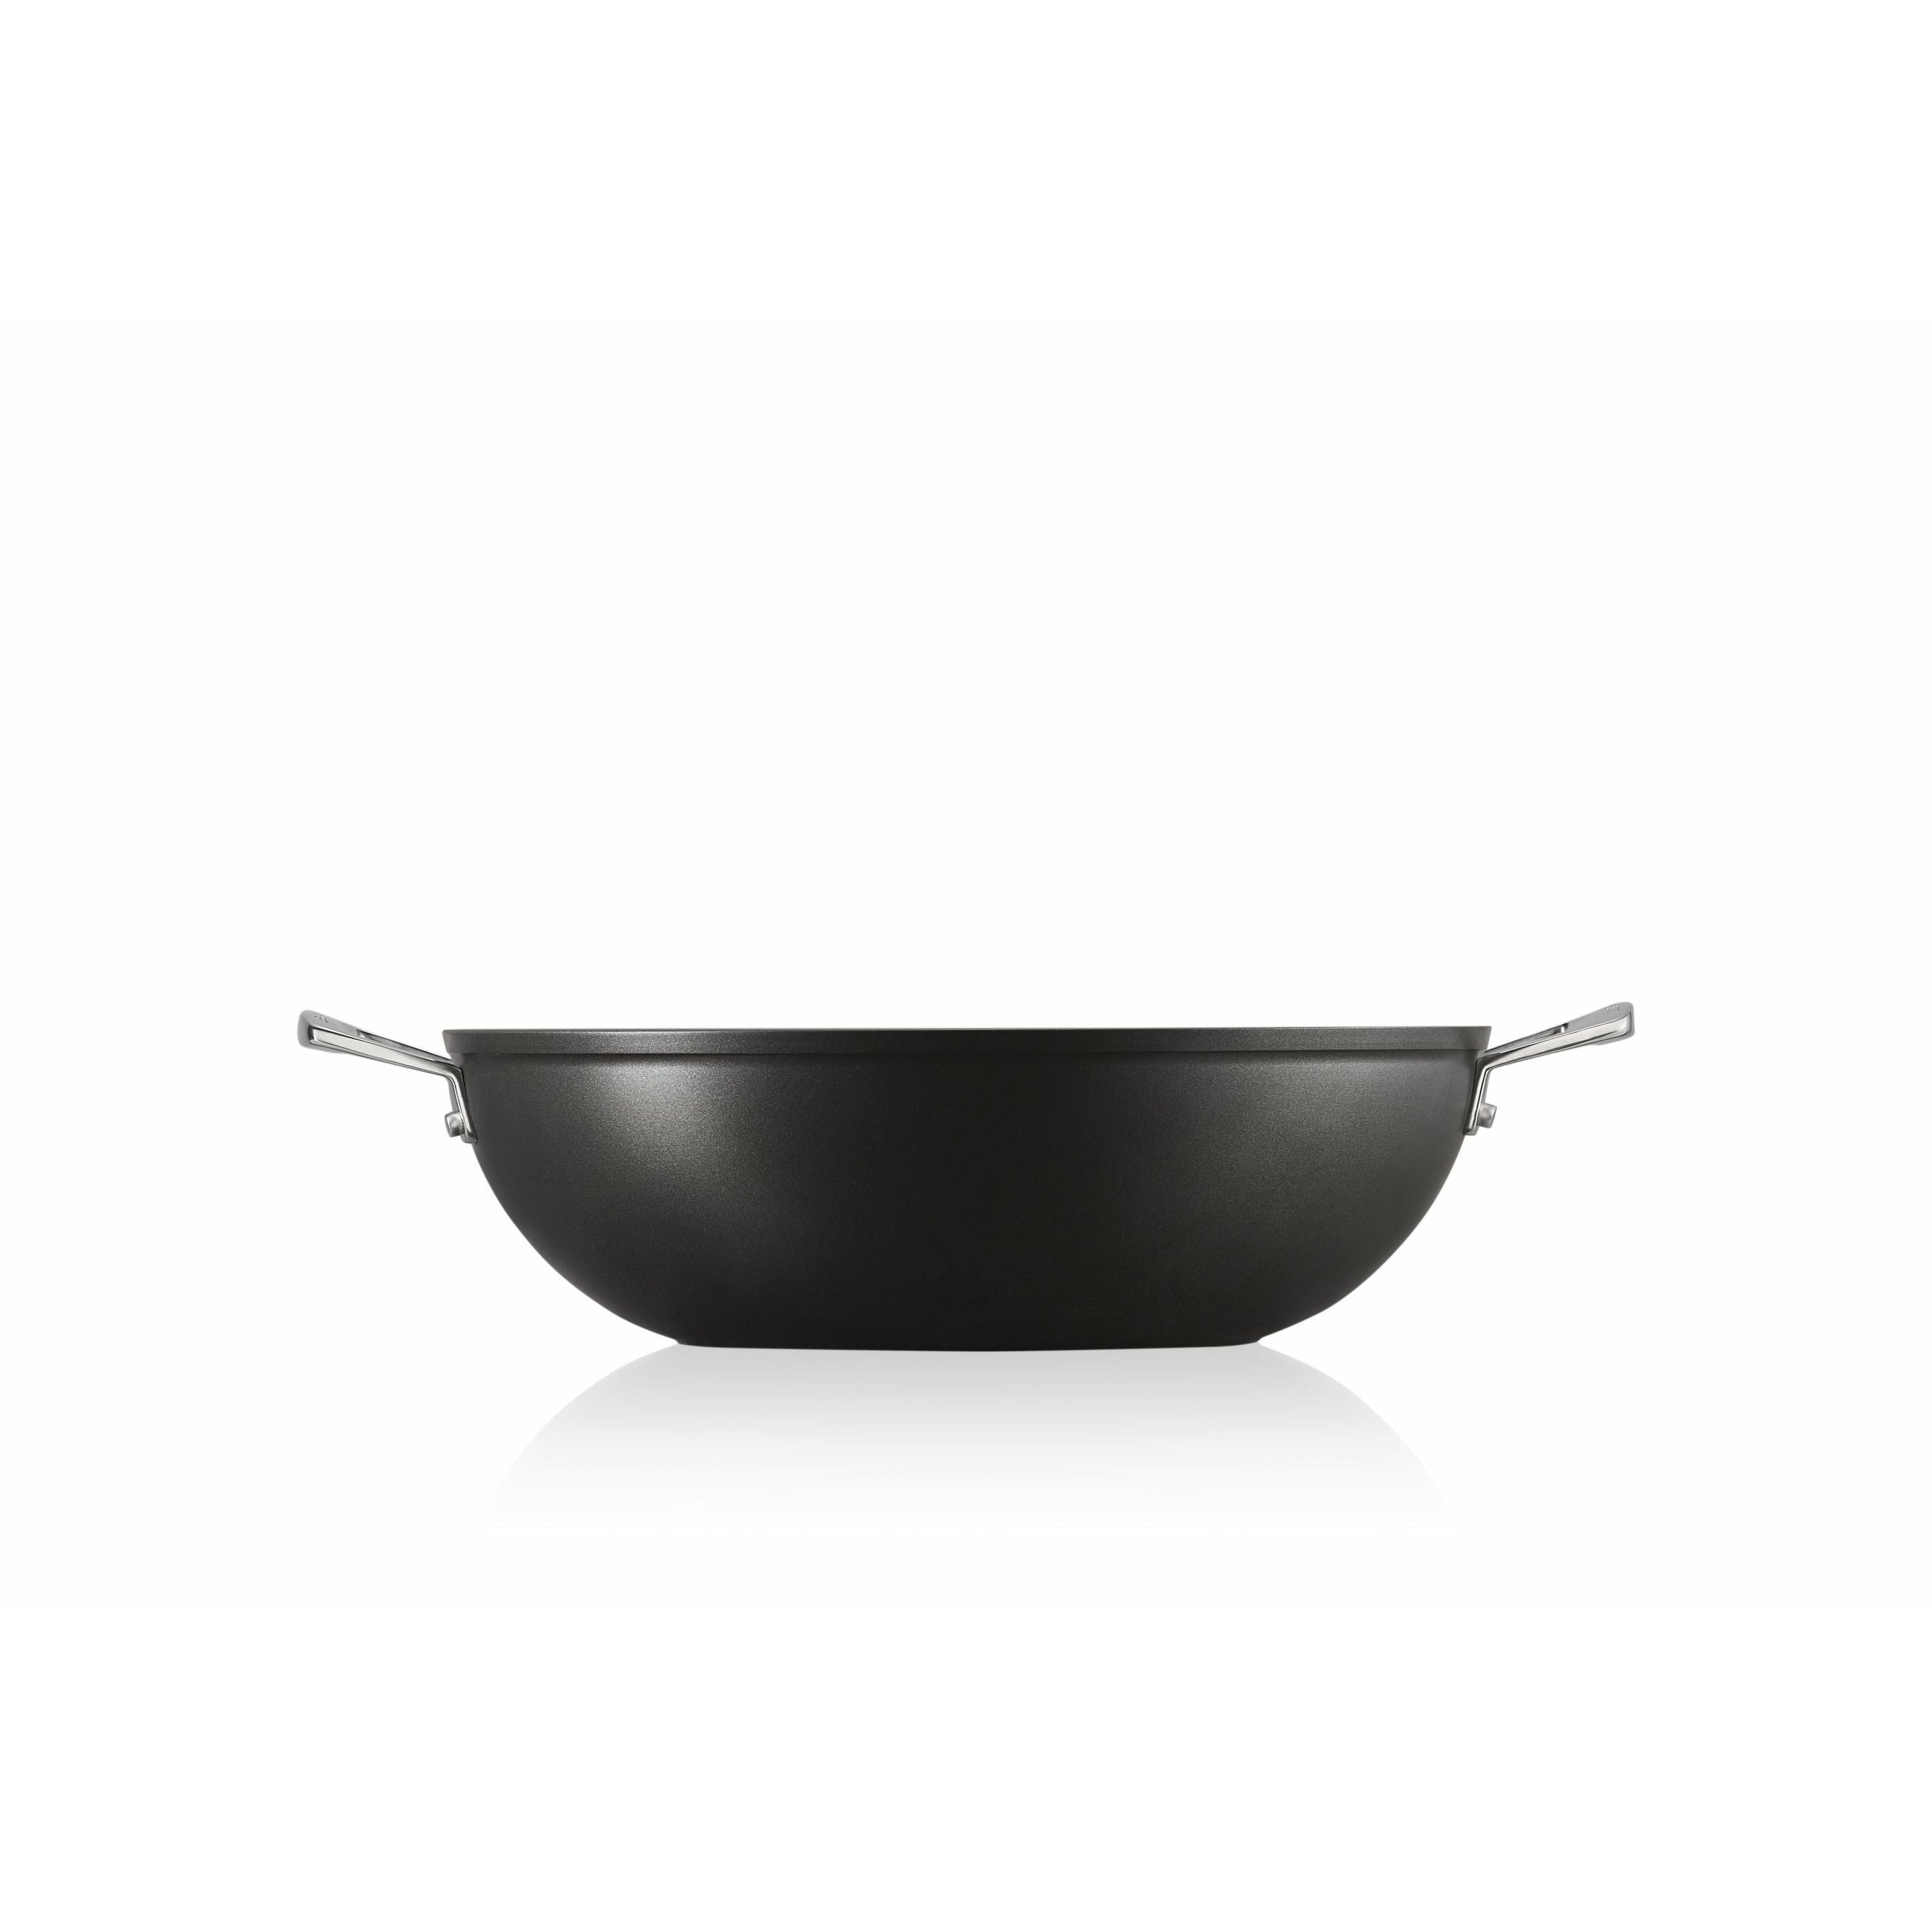 Le Creuset in alluminio non stick wok, 32 cm